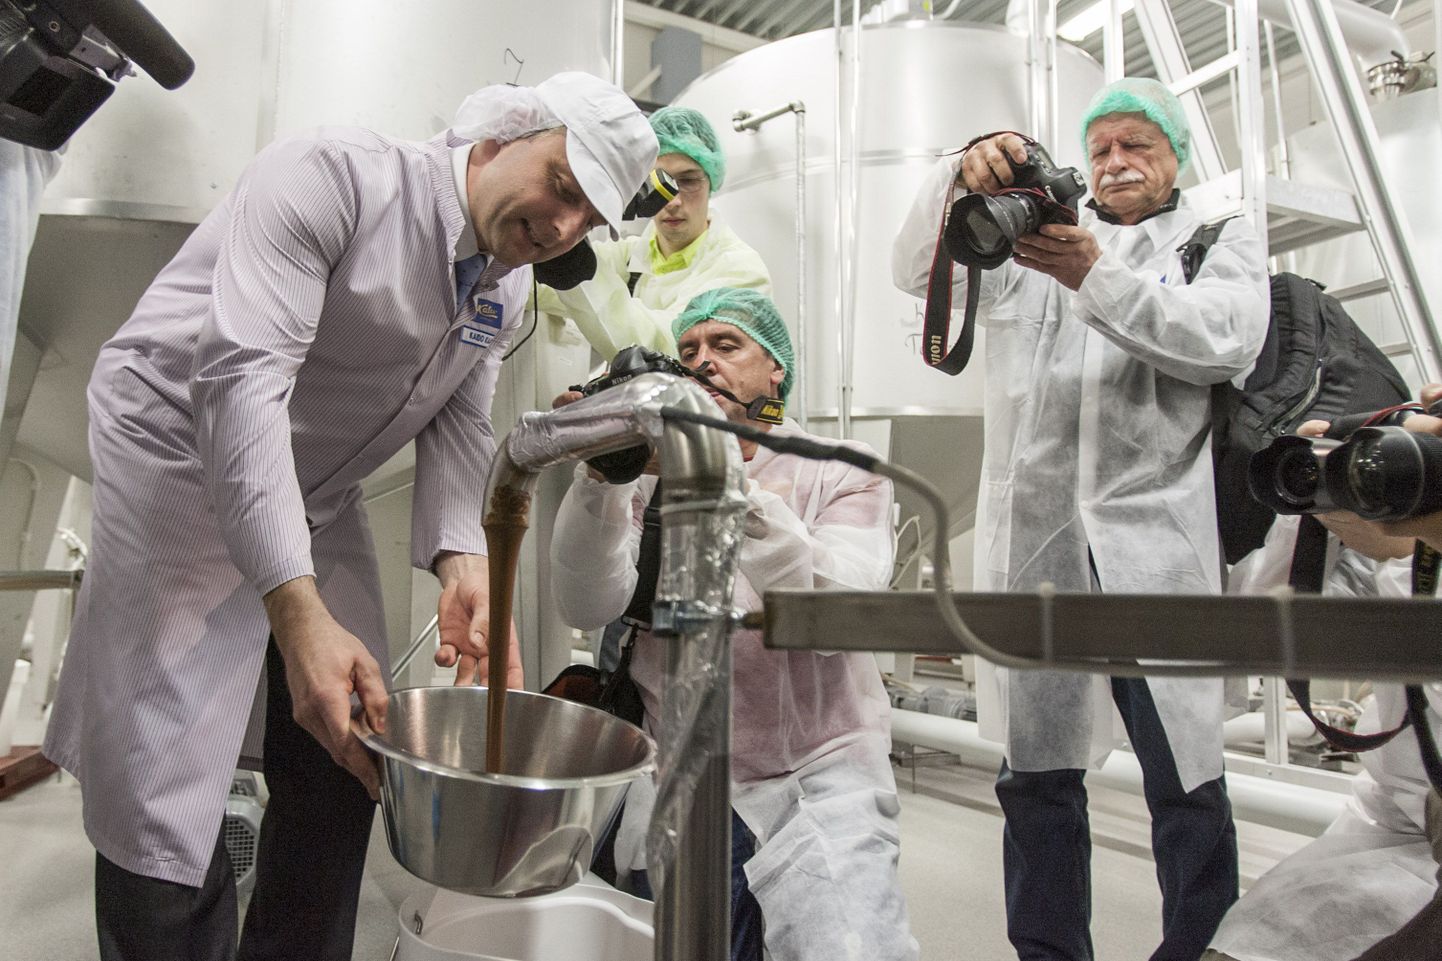 AS Kalev avas aprillis üle kolme miljoni euro maksnud šokolaadiköögi, mis on viimaste aastate üks suurimaid investeeringuid Eesti toiduainetööstuses.